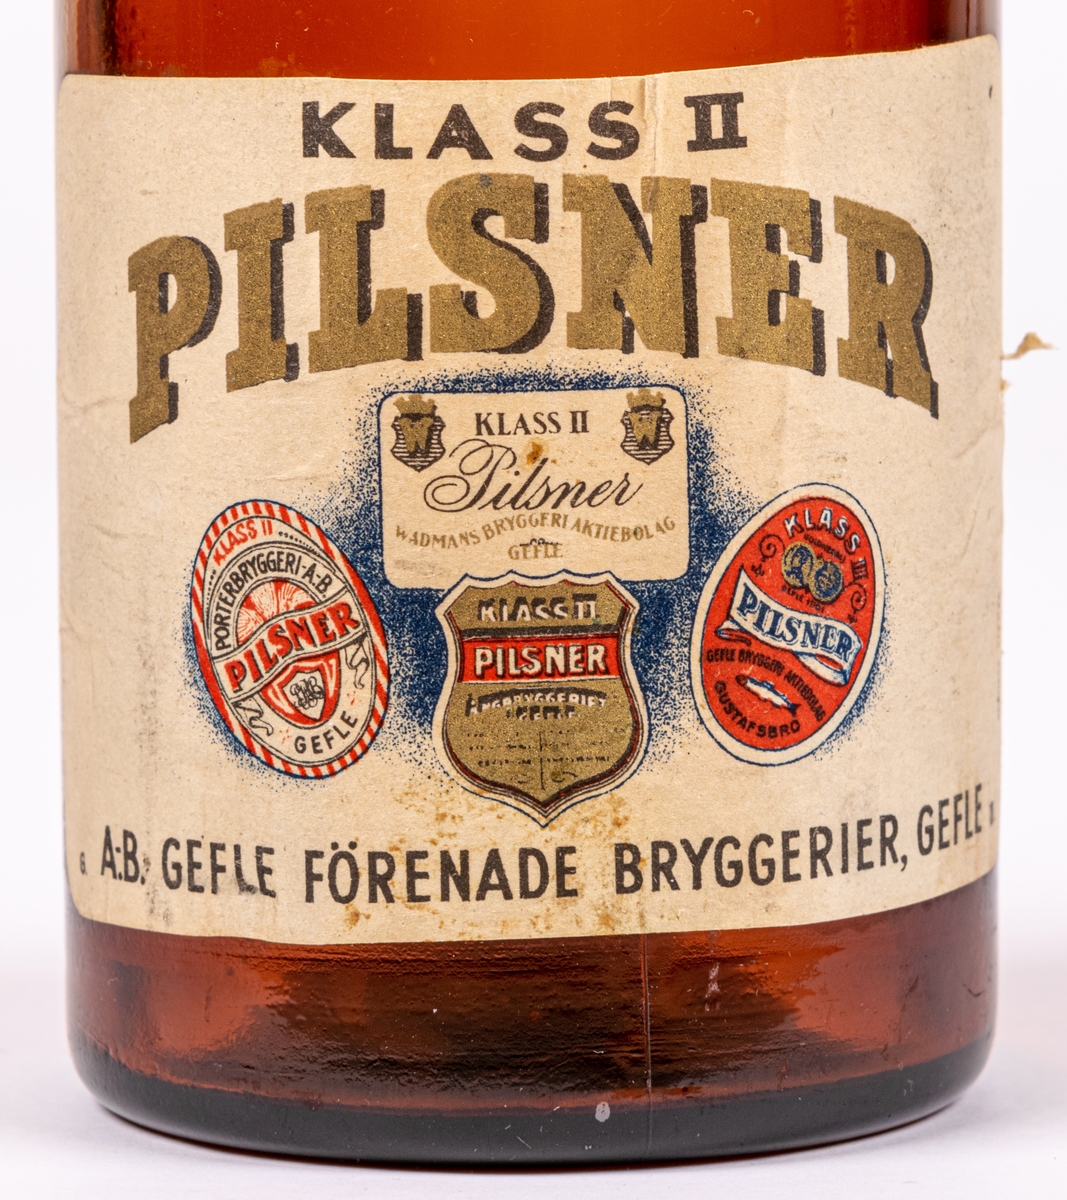 Flaska. Brunt glas. Patentkork, metall. Etikett: "PILSNER KLASS II GEFLE" m.m.
A.B. Gefle förenade bryggerier, Gefle.